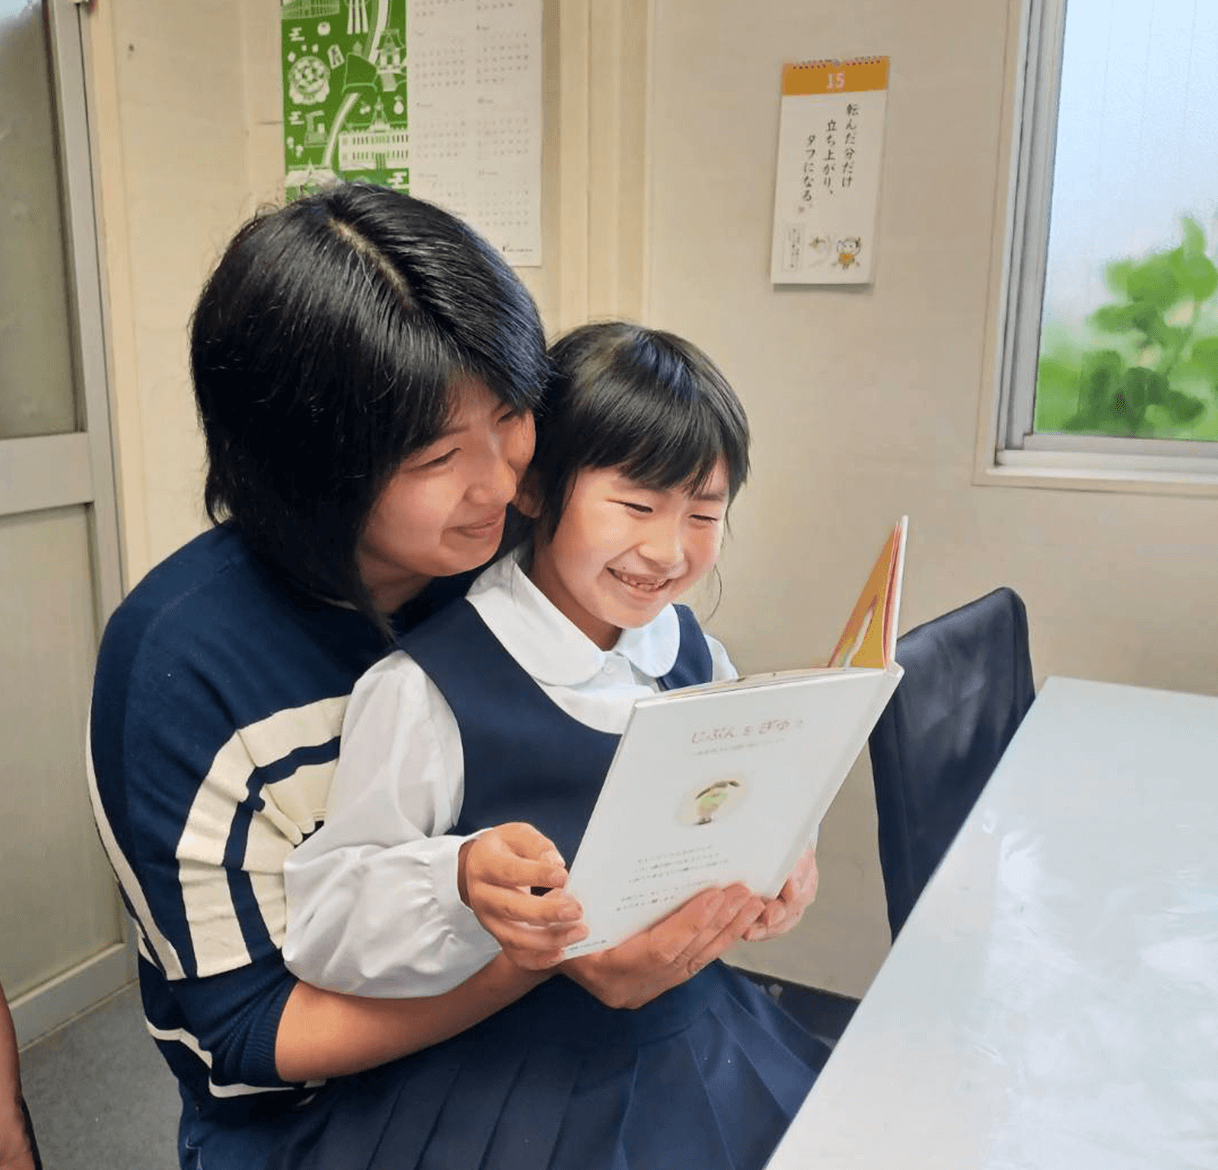 お子さんと読むことで家族のコミュニケーションツールとして活躍